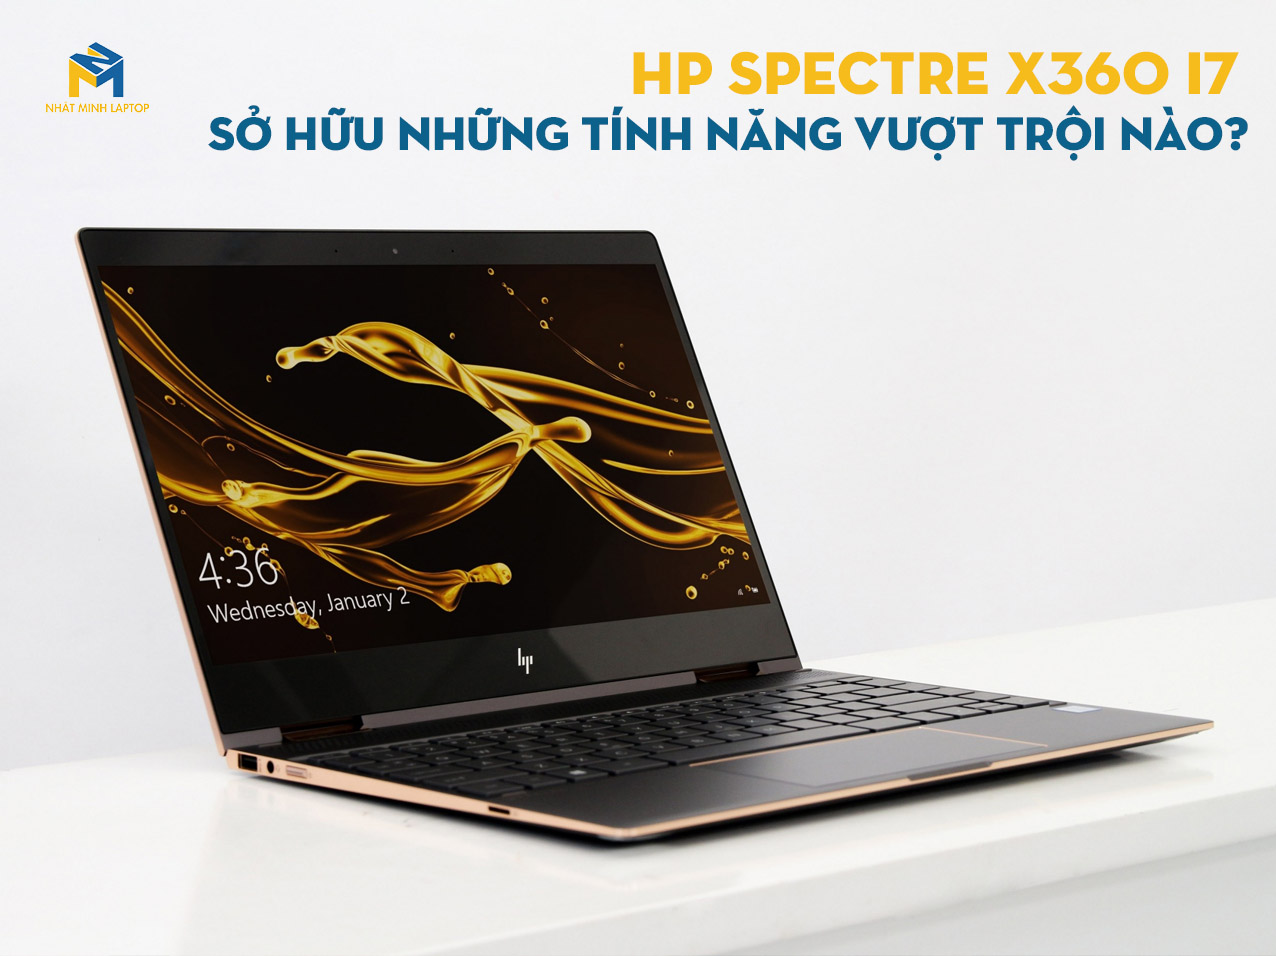 HP Spectre X360 i7 Sở hữu những tính năng vượt trội nào?